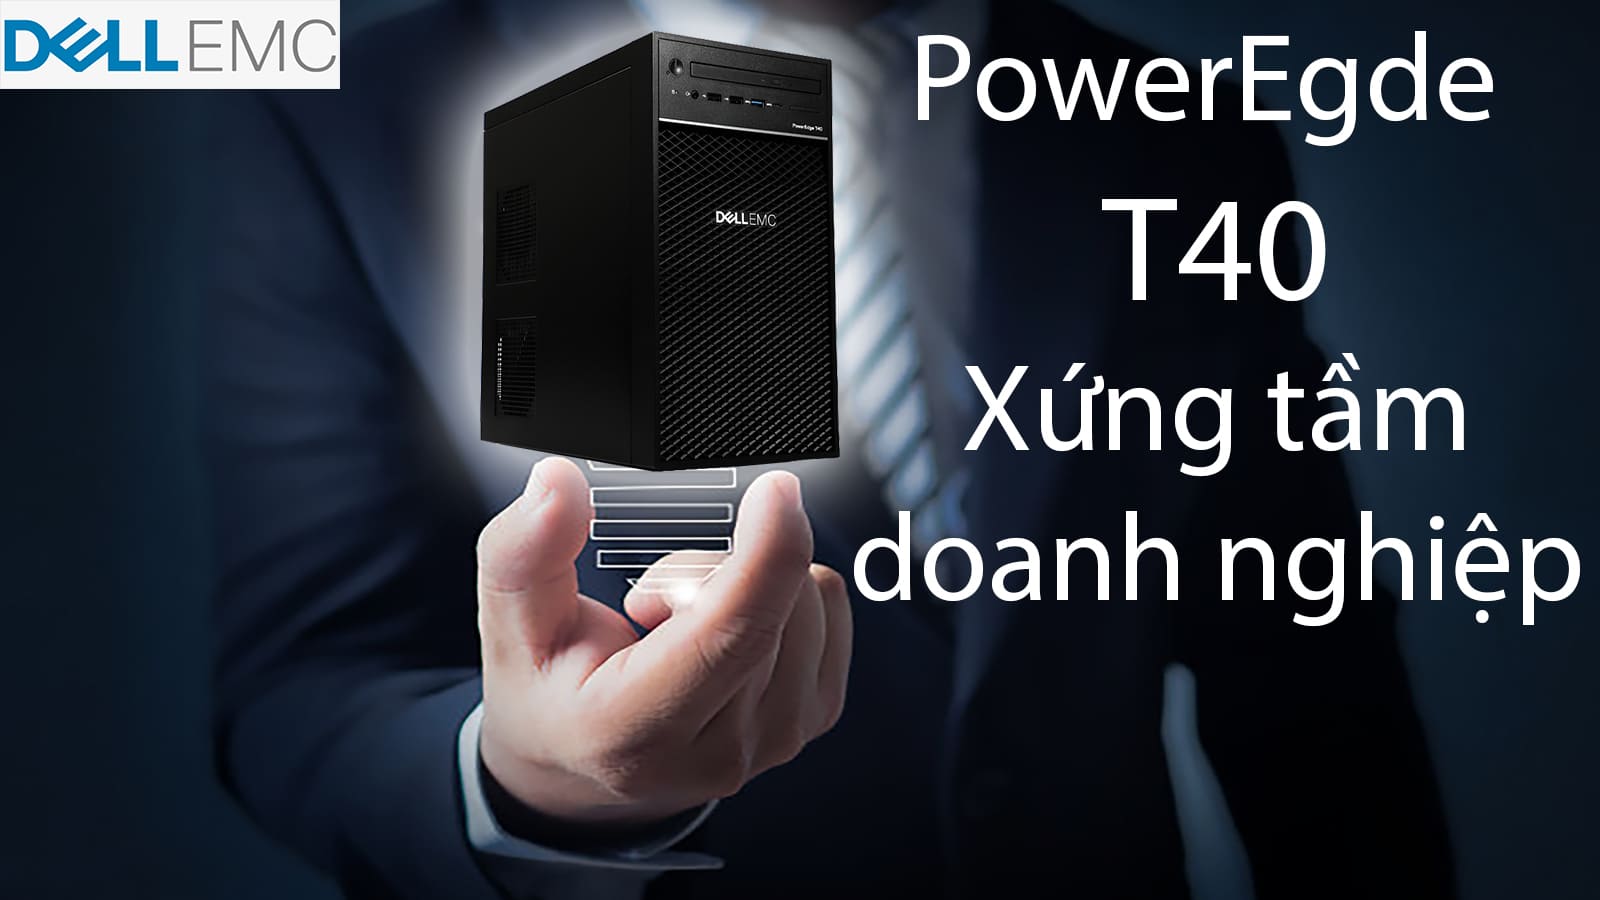 [Mở hộp] Dell Poweredge T40 - lựa chọn máy chủ sáng giá cho doanh nghiệp nhỏ